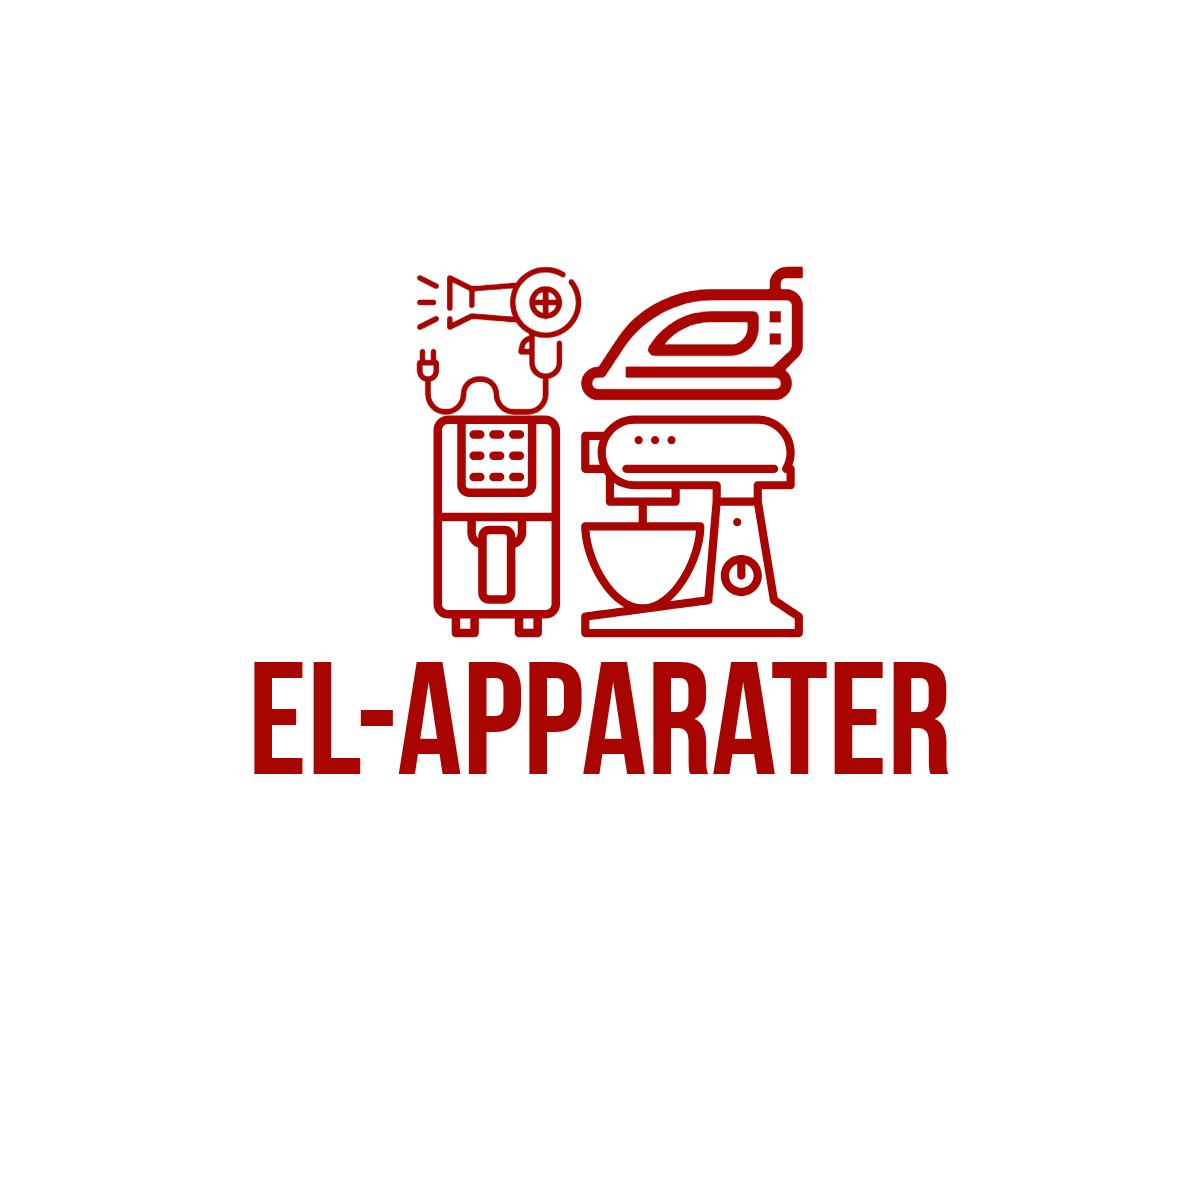 El-apparater